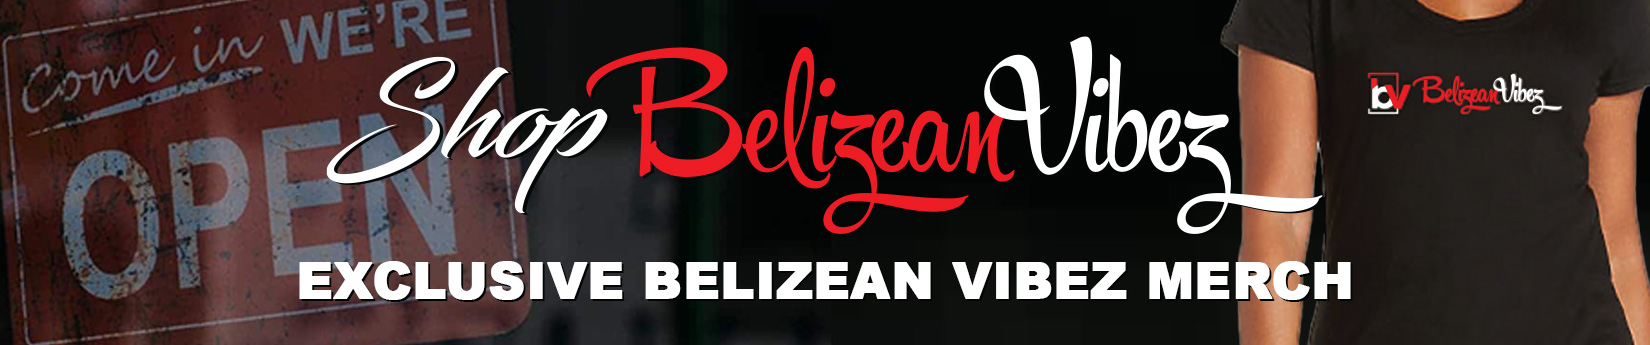 Shop Belizean Vibez Exclusive Merch